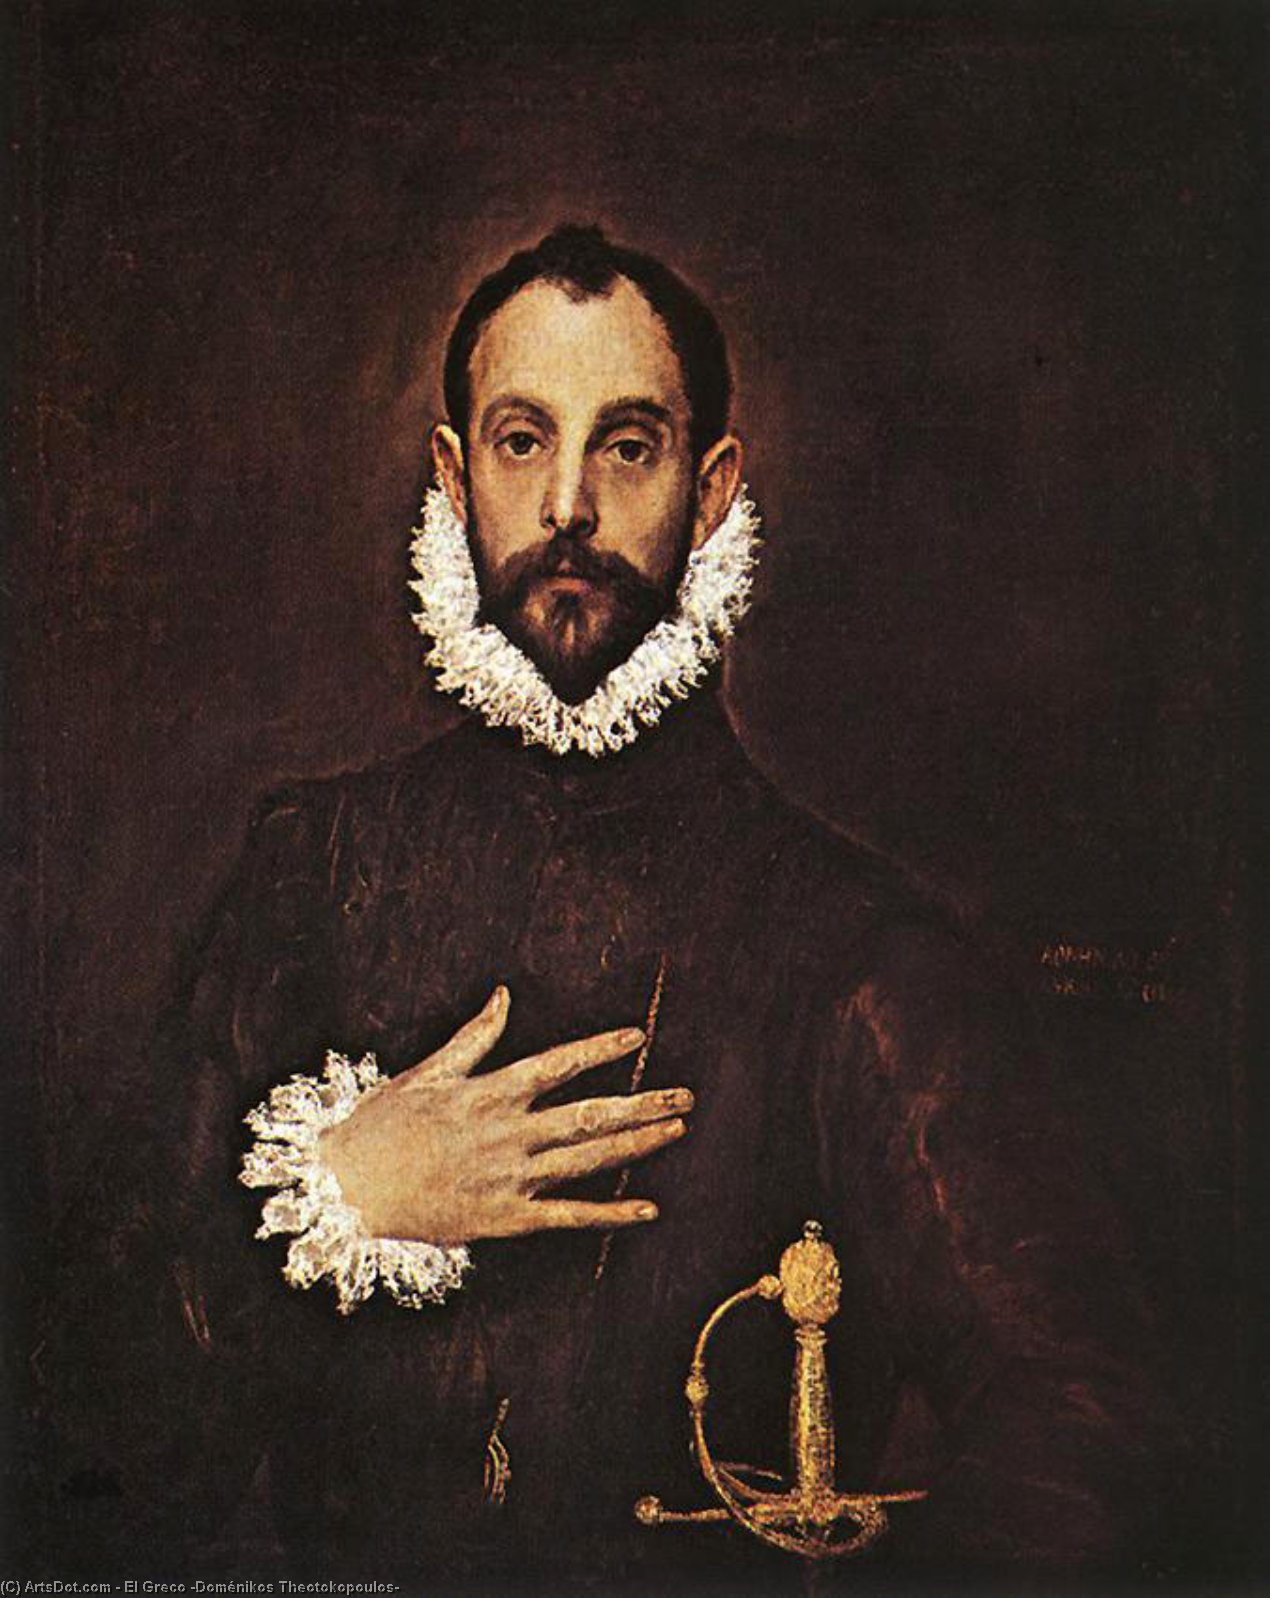 WikiOO.org - Enciclopédia das Belas Artes - Pintura, Arte por El Greco (Doménikos Theotokopoulos) - The Knight with his hand on his breast